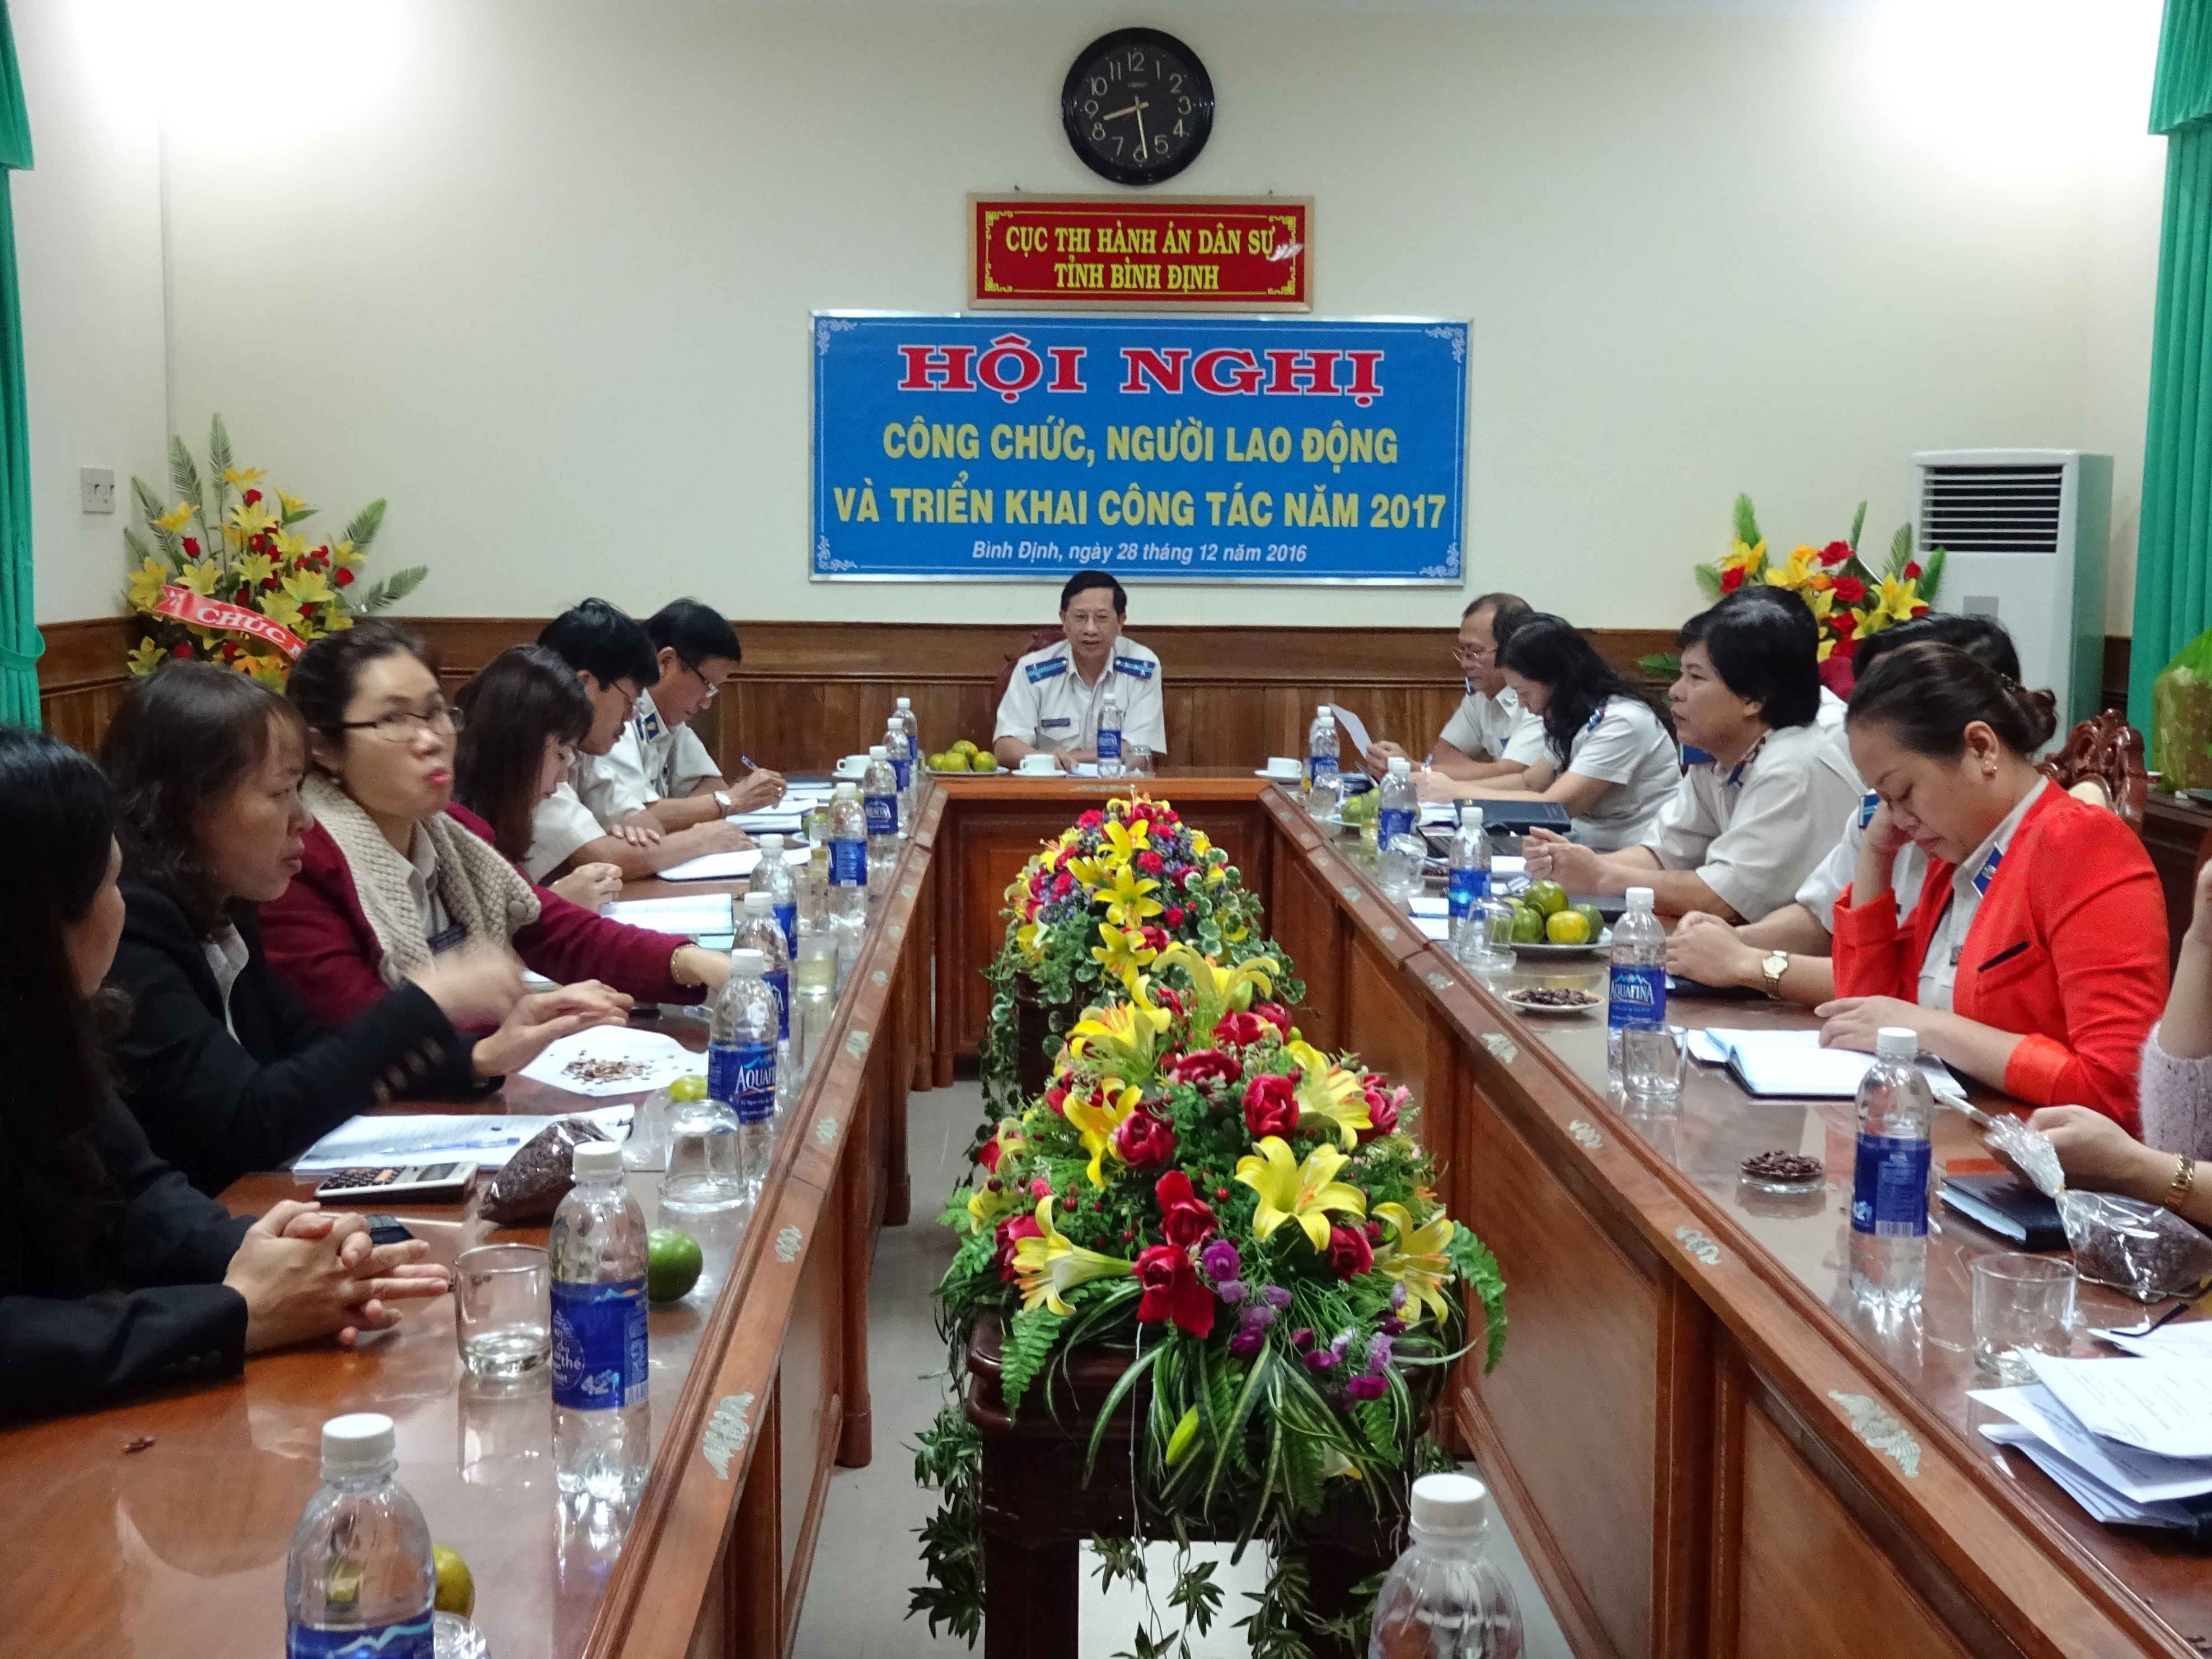 Văn phòng Cục Thi hành án dân sự tỉnh Bình Định tổ chức Hội nghị công chức, người lao động năm 2017.